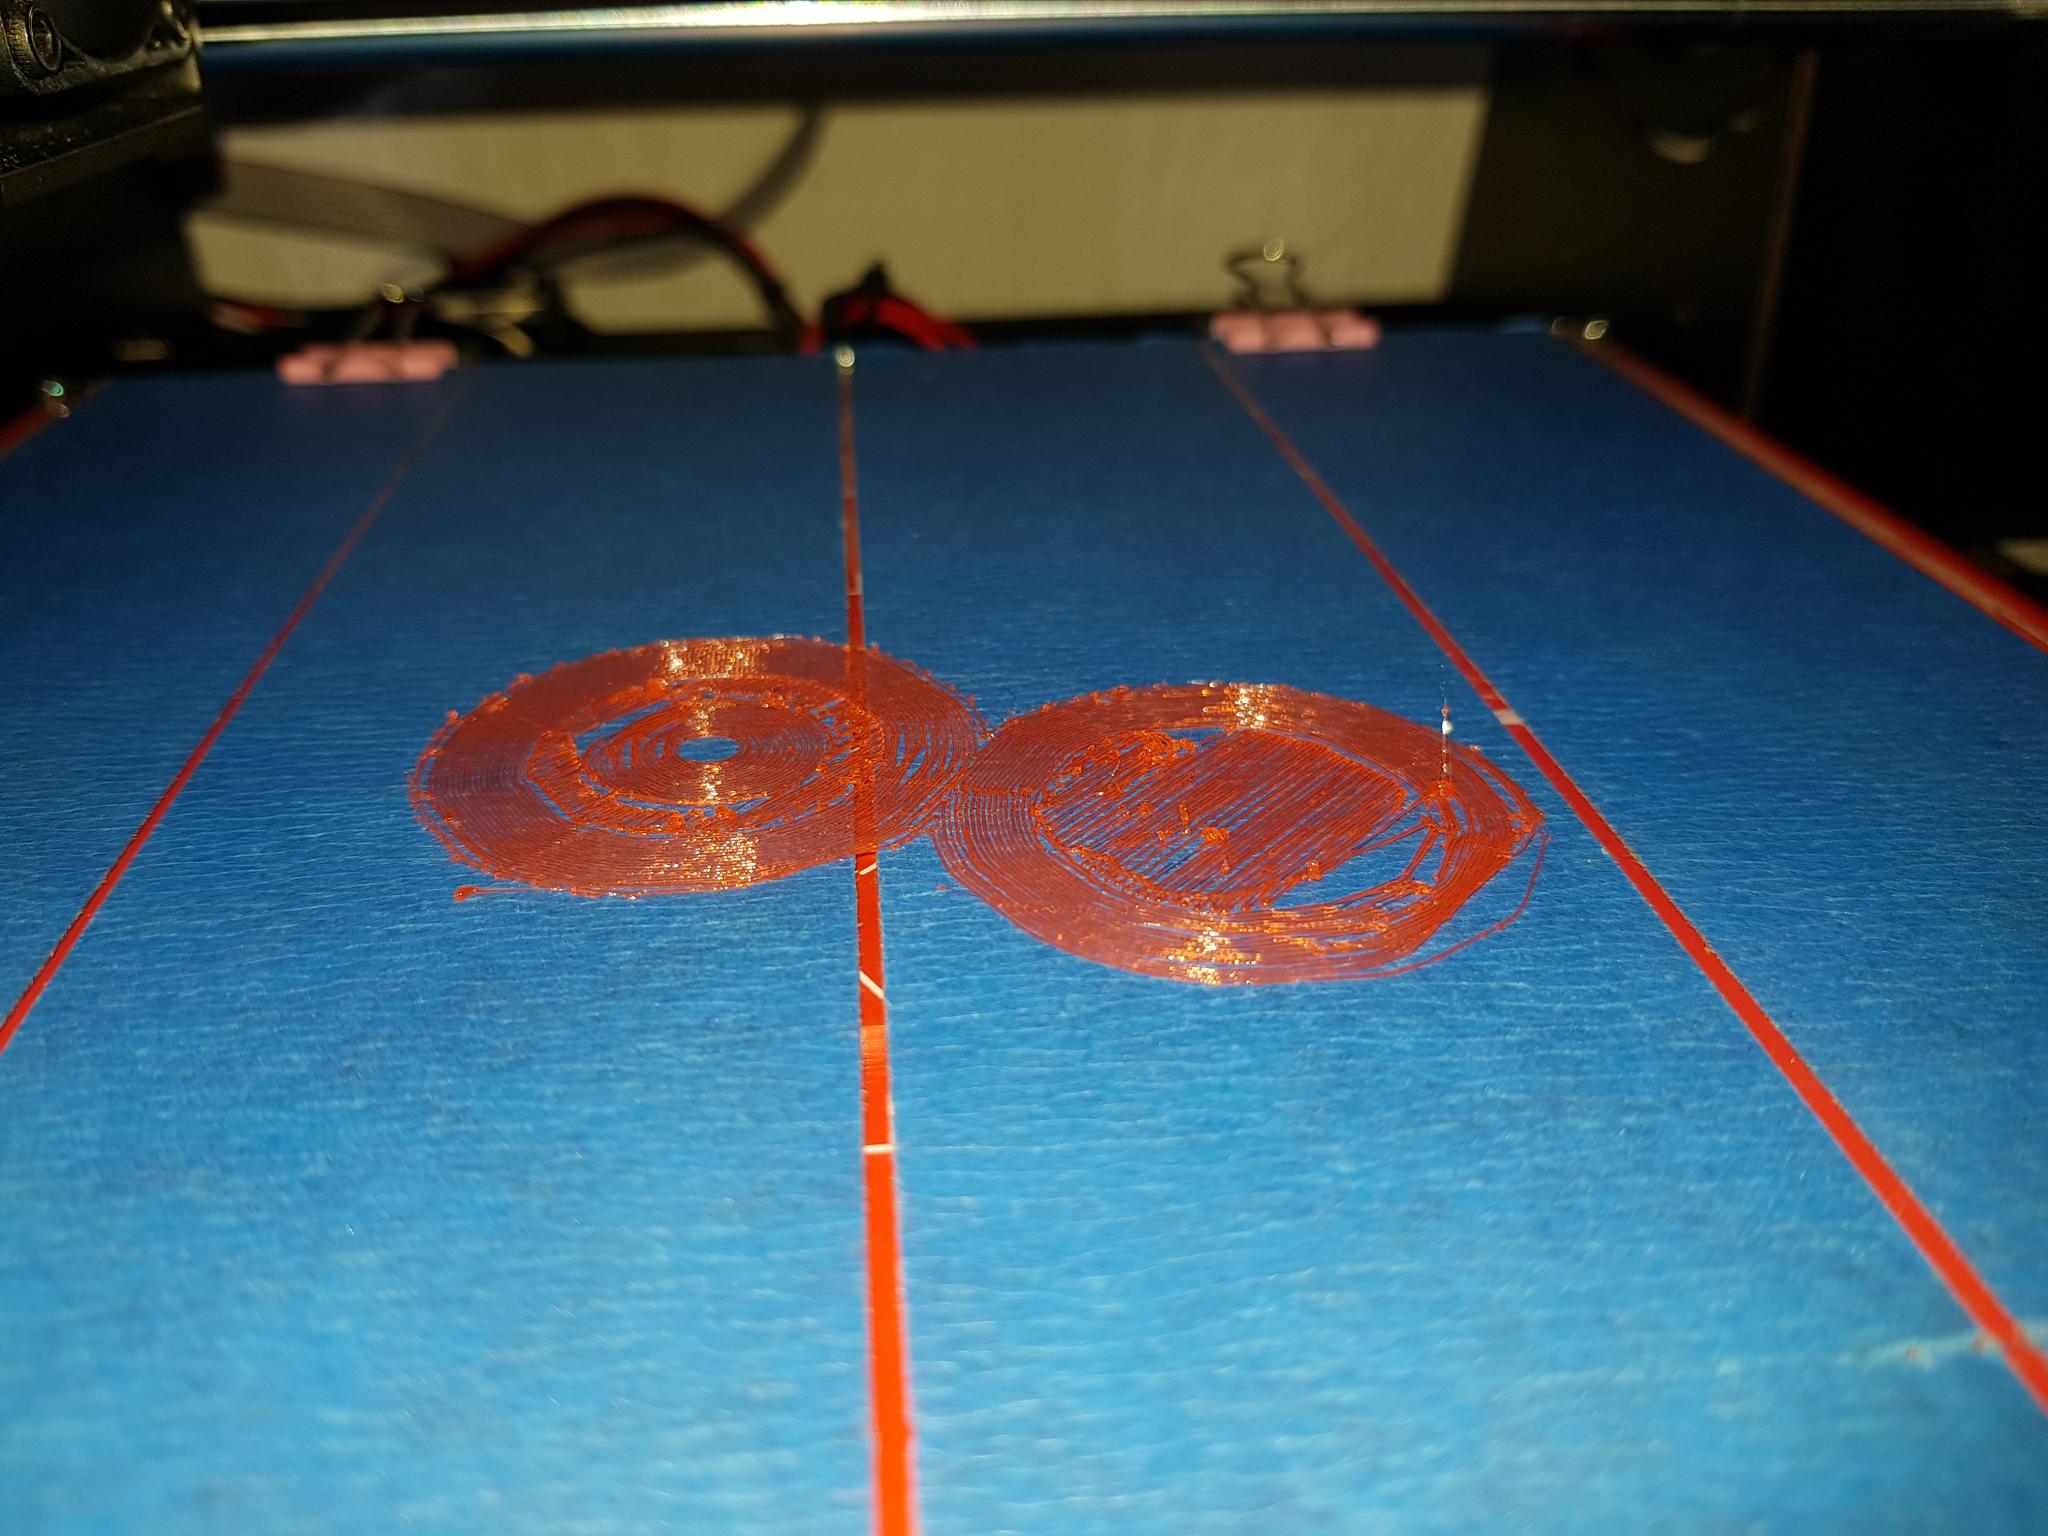 le fil ne colle pas - CTC - Forum pour les imprimantes 3D et l